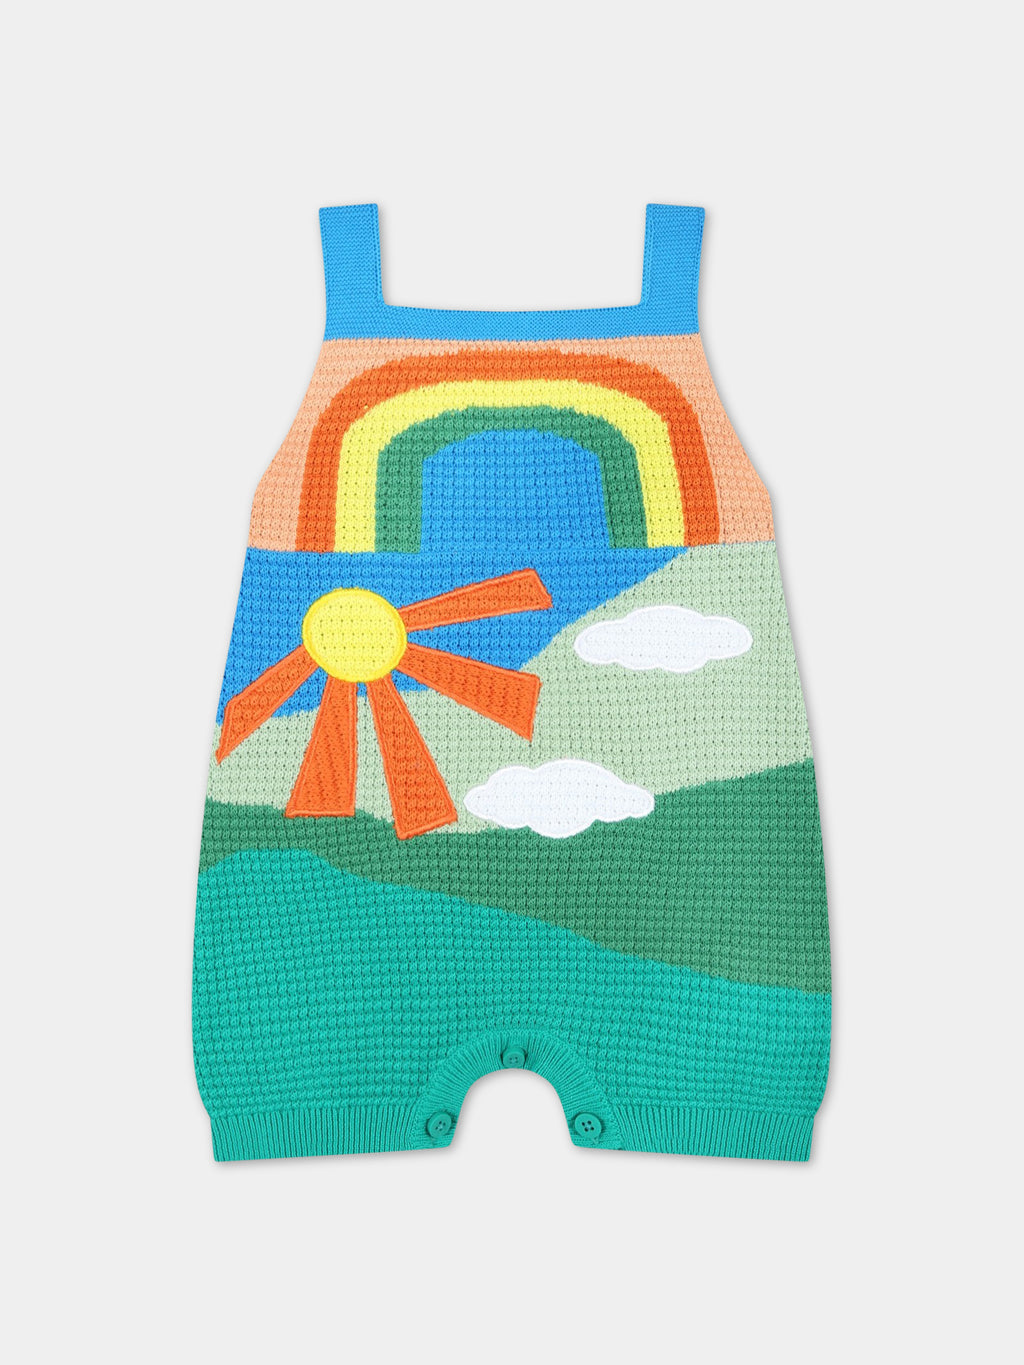 Salopette multicolore pour bébé fille avec nuages et soleil